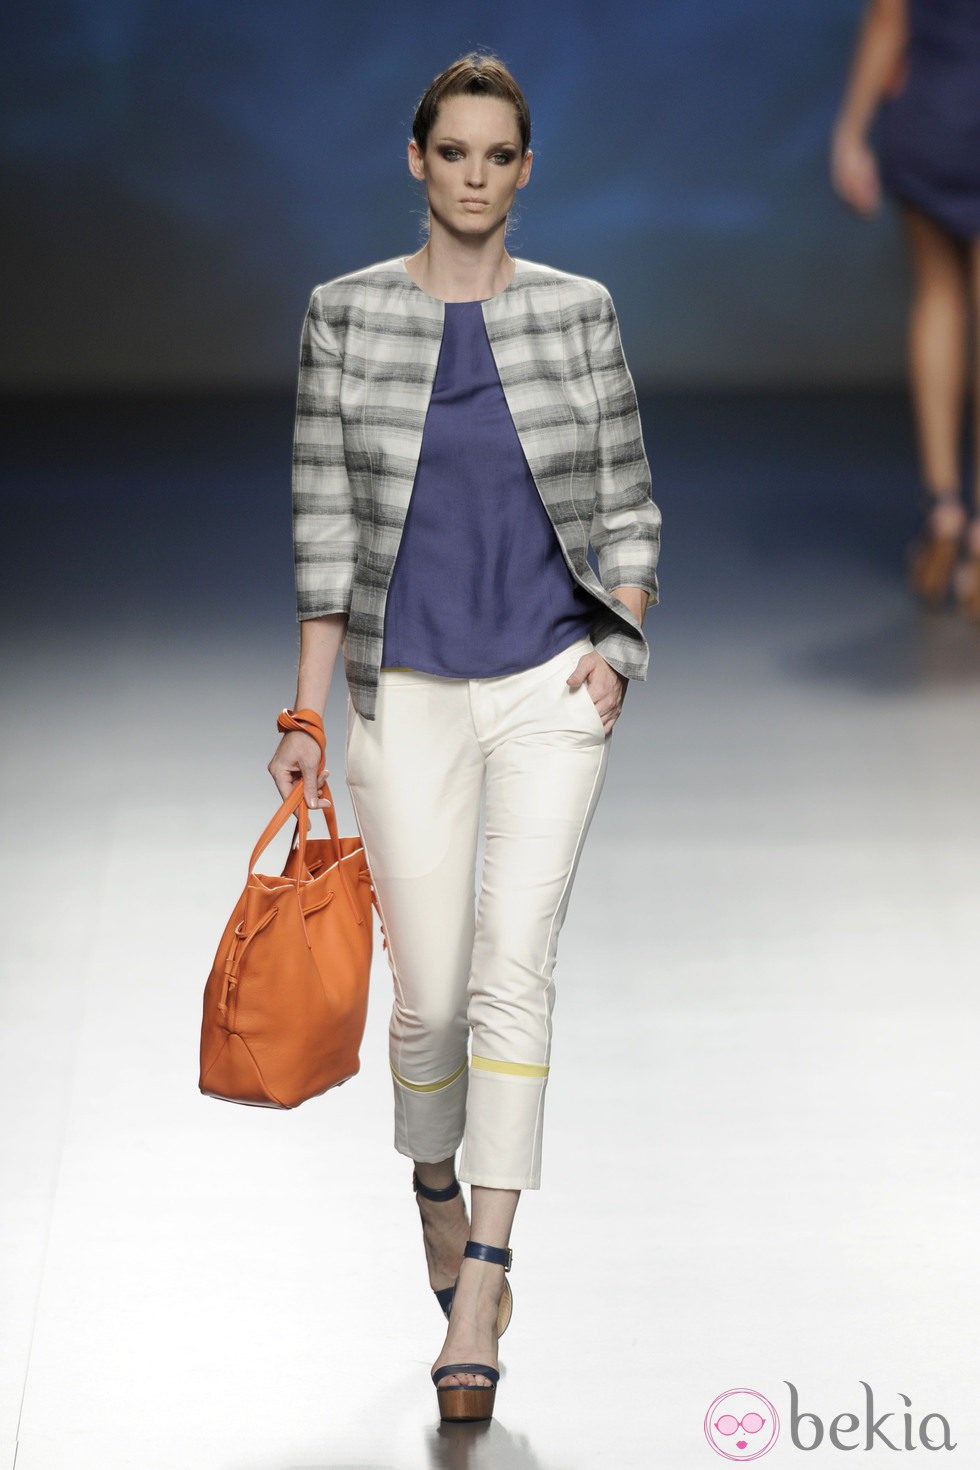 Pantalón pesquero blanco combinado con una chaqueta gris y bolso naranja de la colección primavera/verano 2013 de Sara Coleman